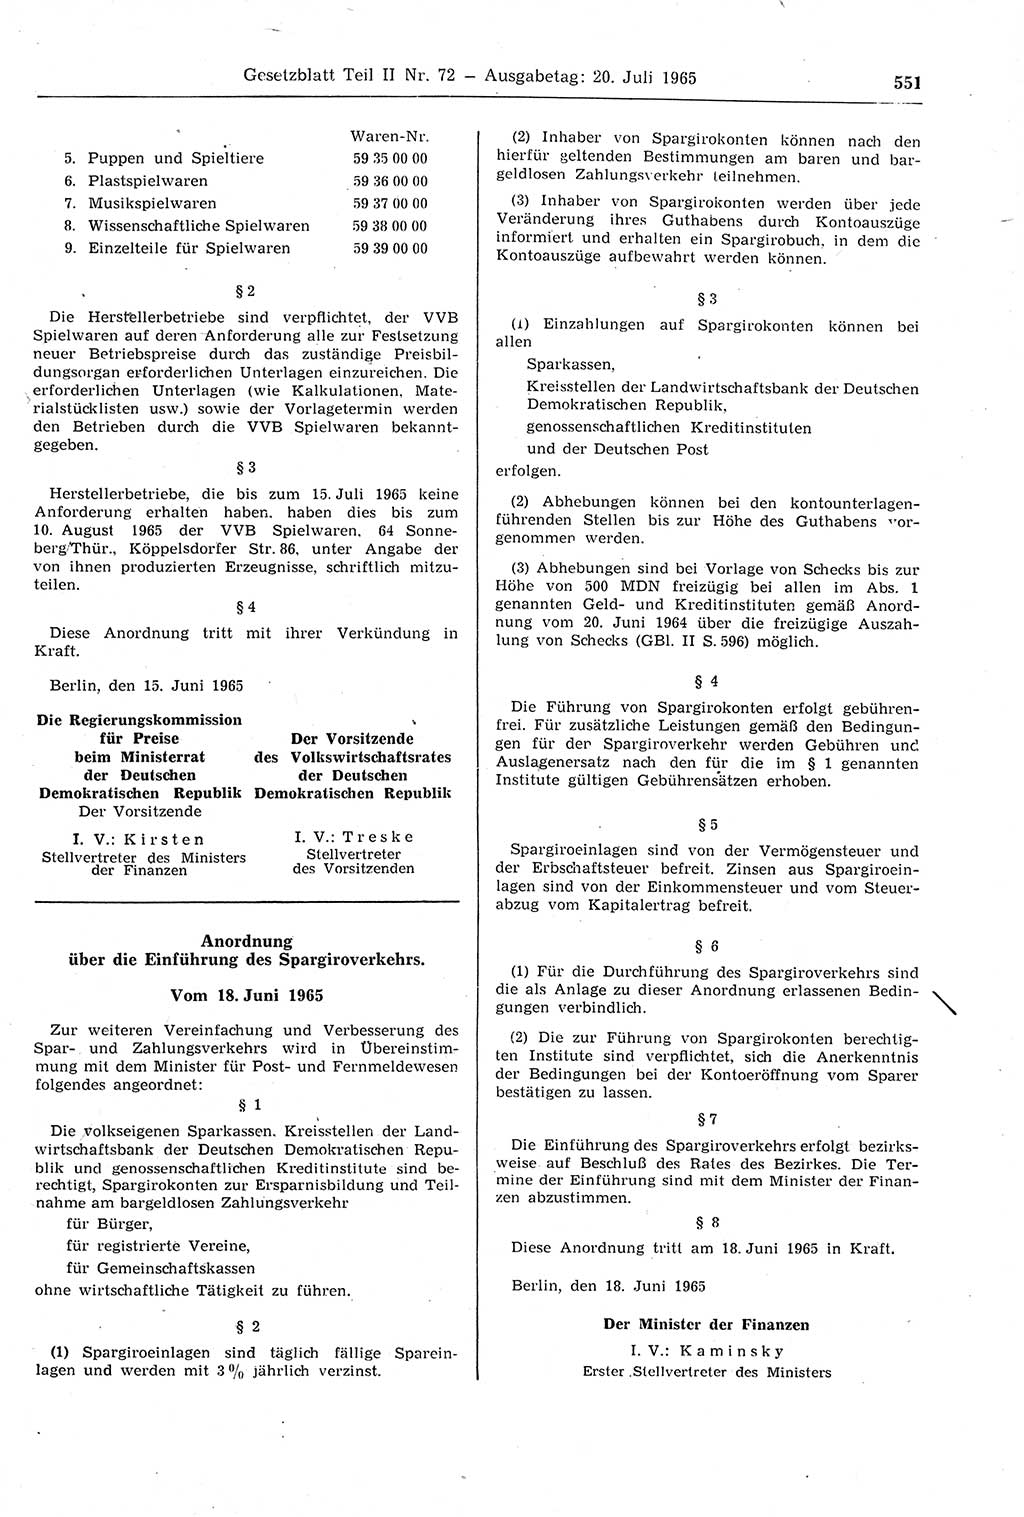 Gesetzblatt (GBl.) der Deutschen Demokratischen Republik (DDR) Teil ⅠⅠ 1965, Seite 551 (GBl. DDR ⅠⅠ 1965, S. 551)